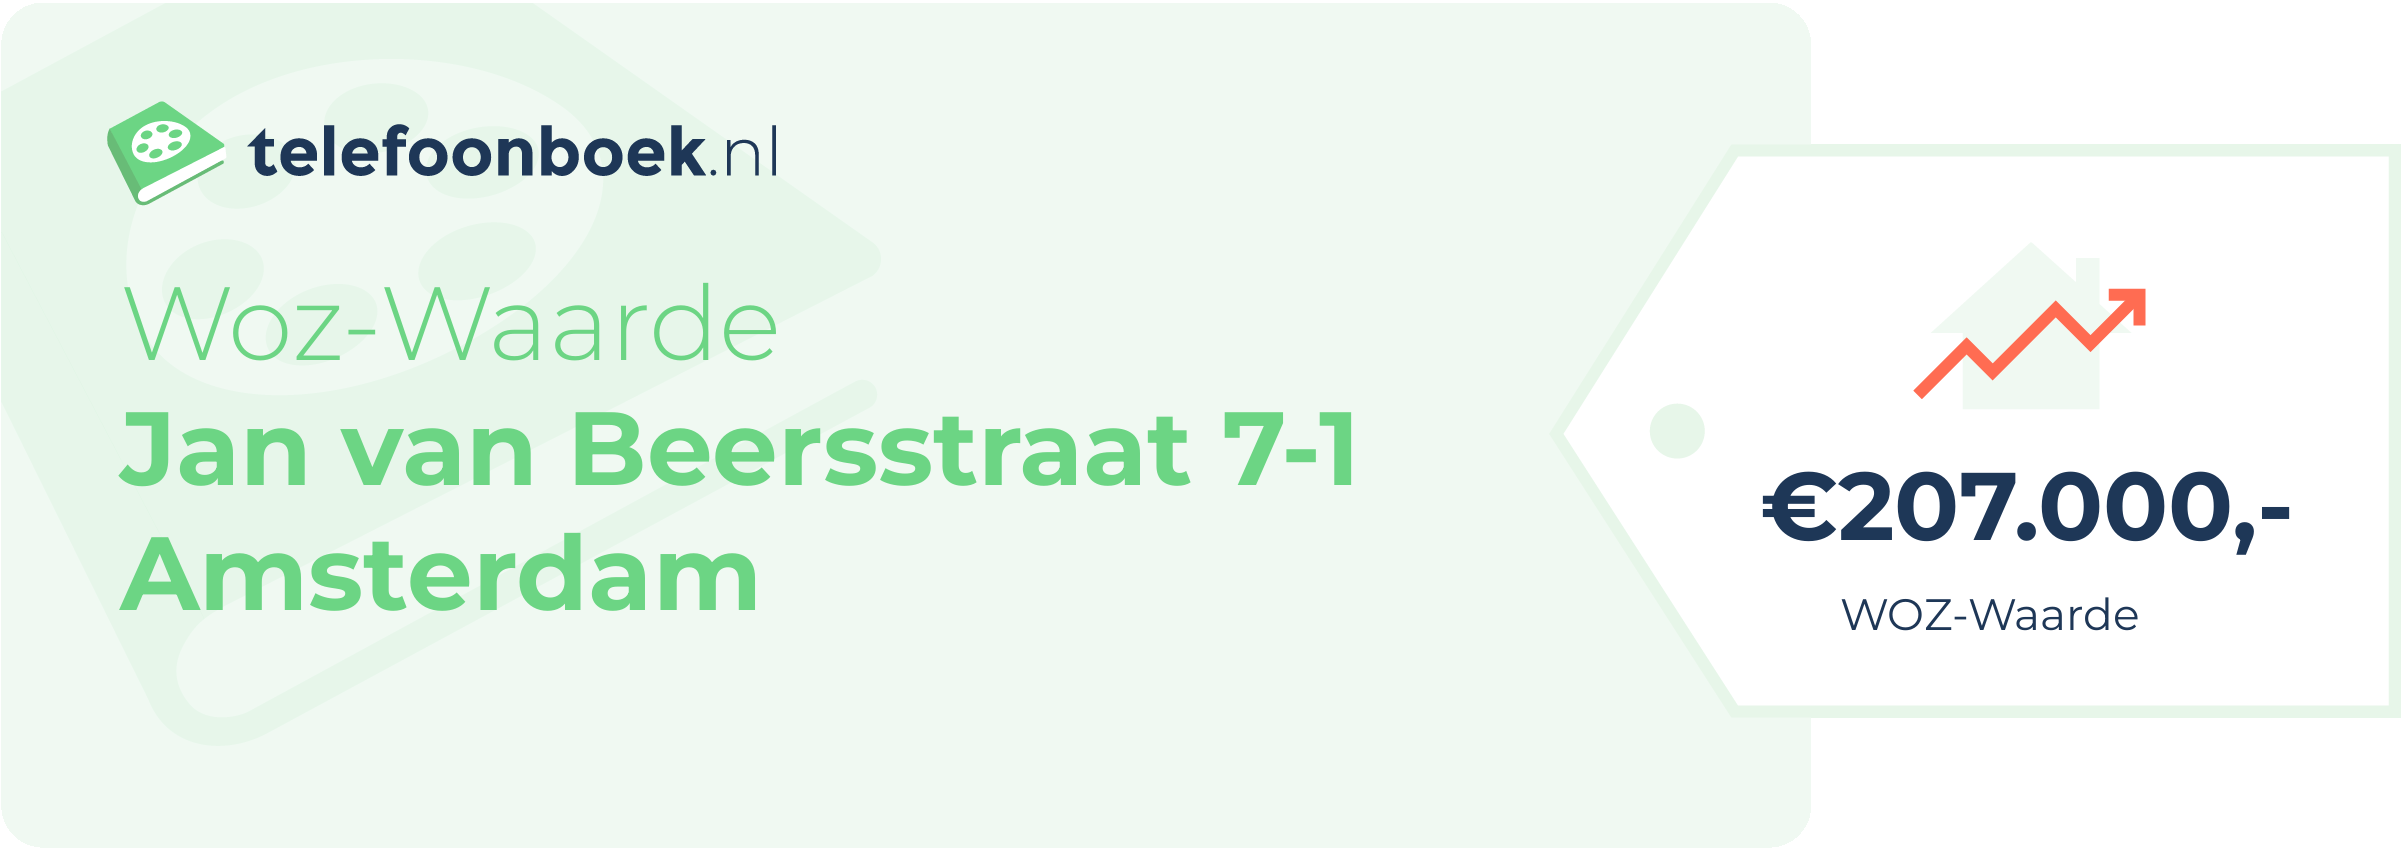 WOZ-waarde Jan Van Beersstraat 7-1 Amsterdam